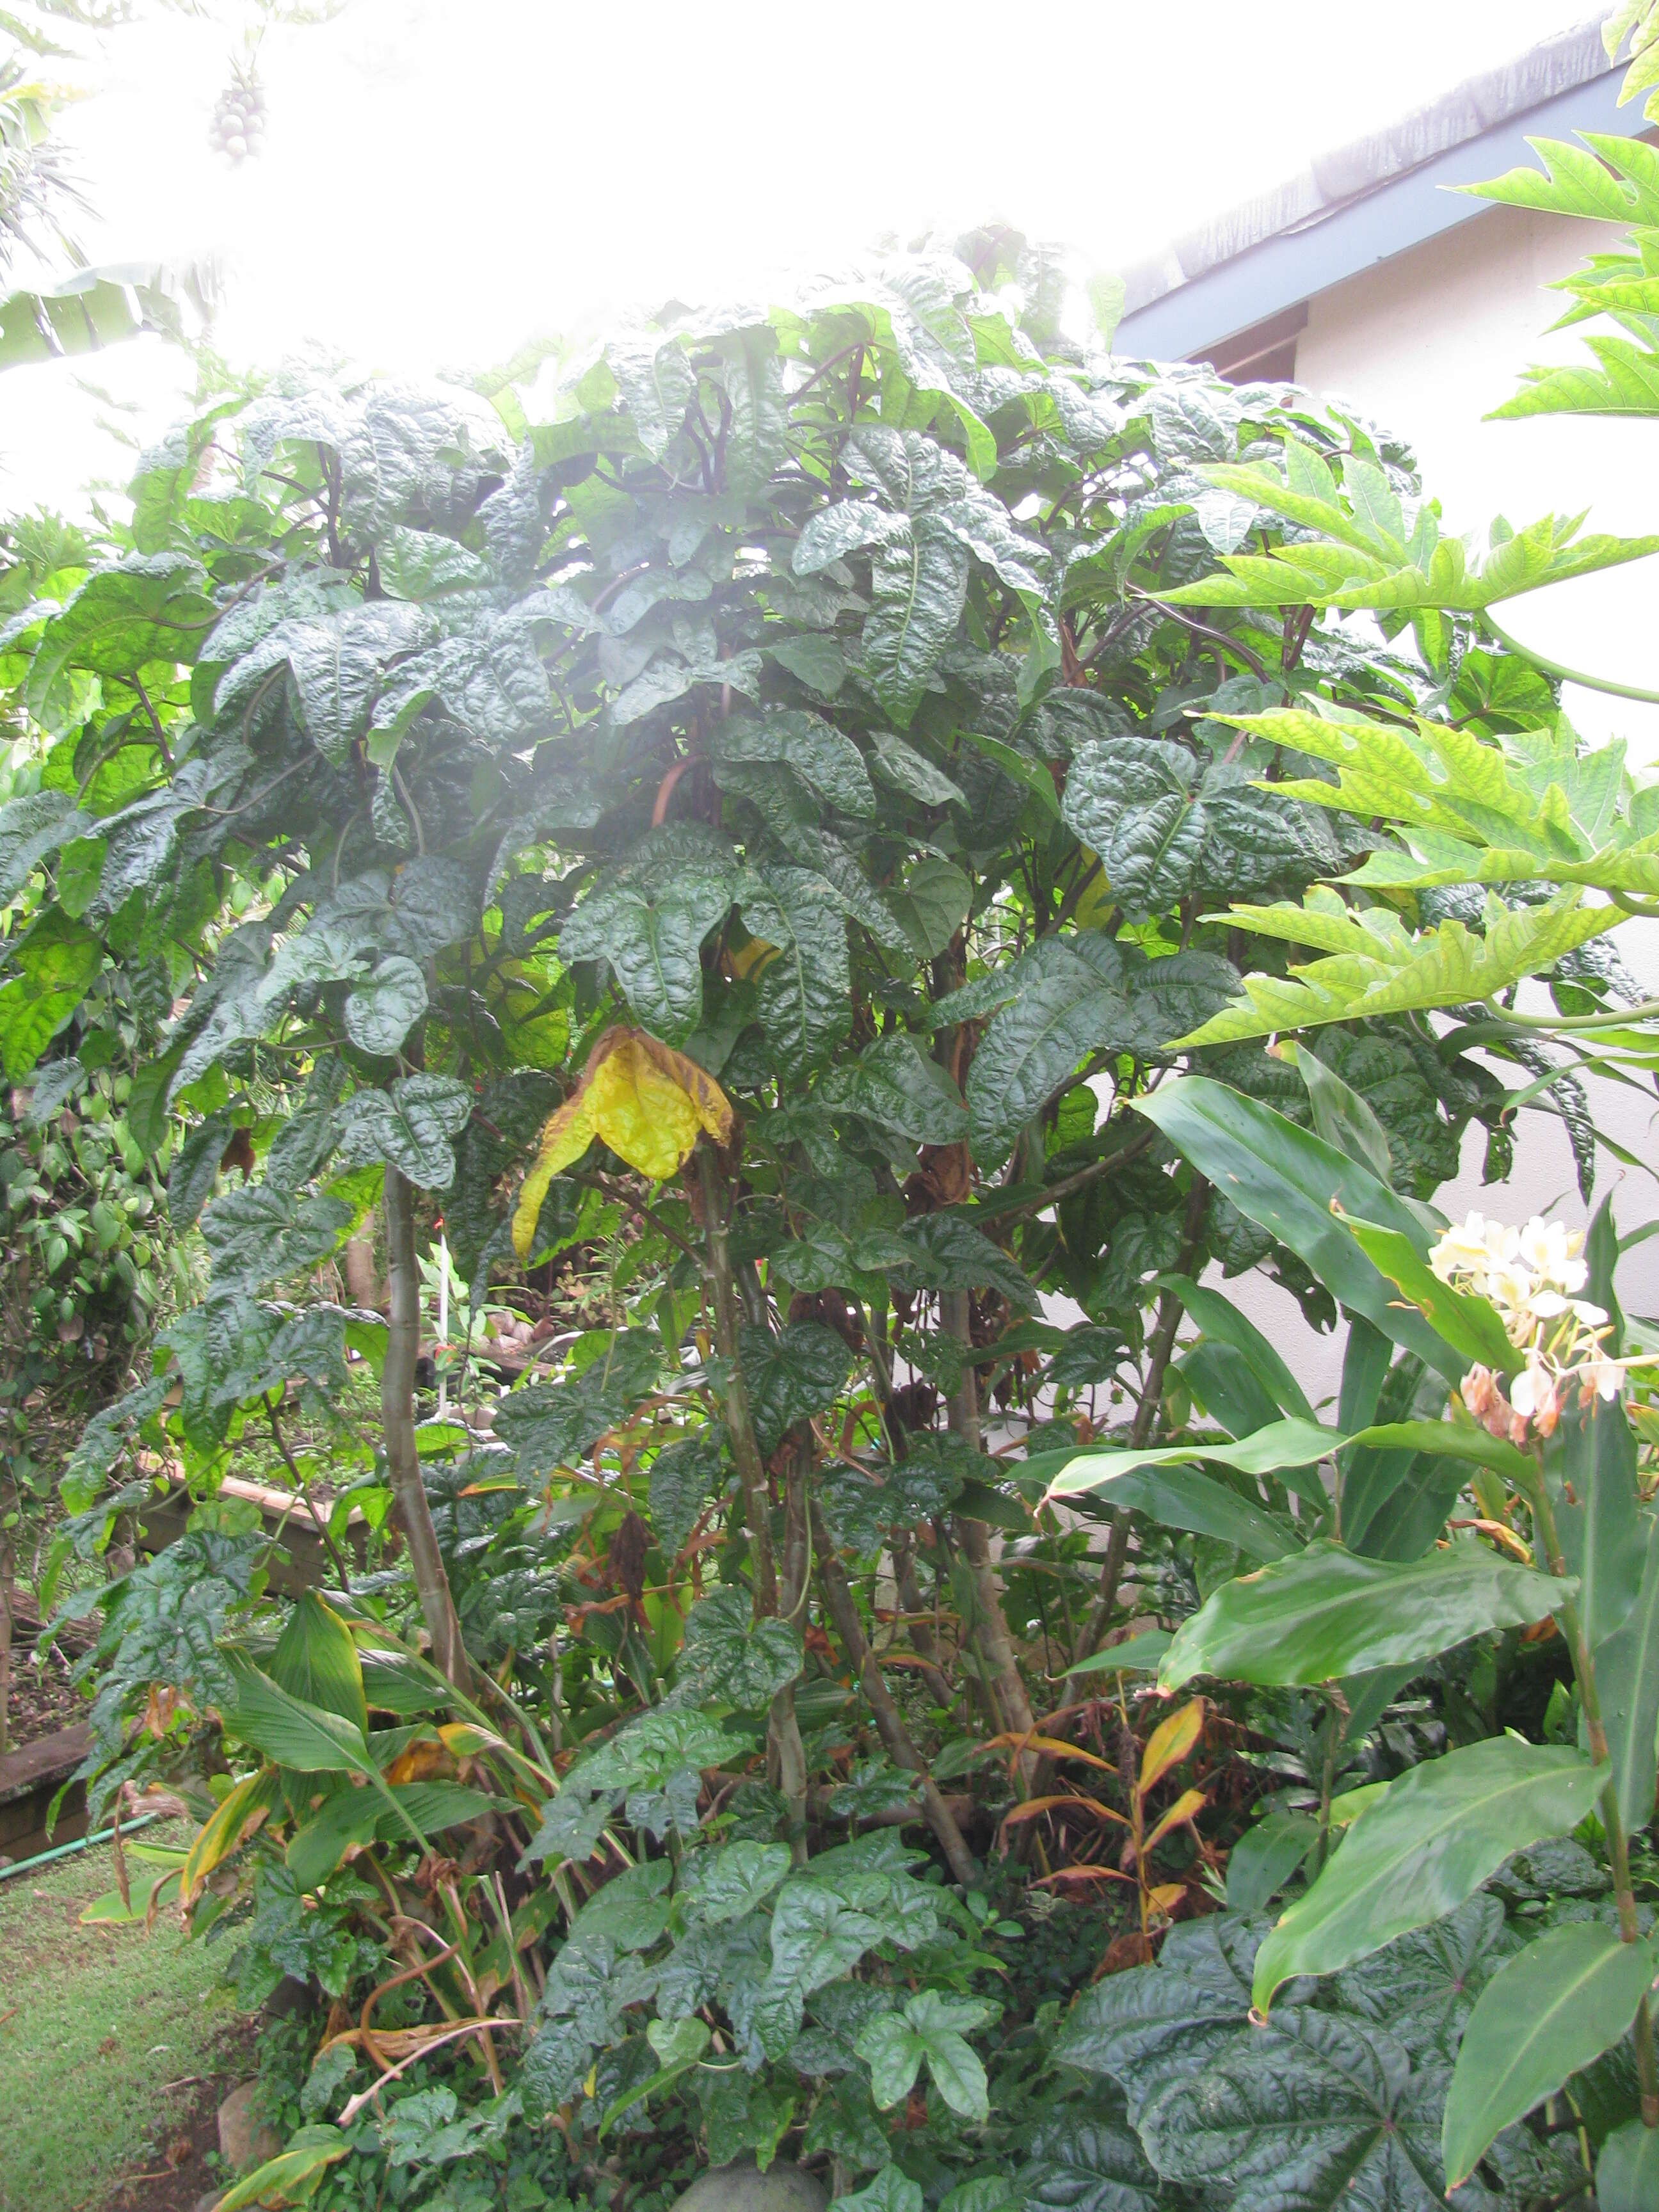 Image of manioc hibiscus